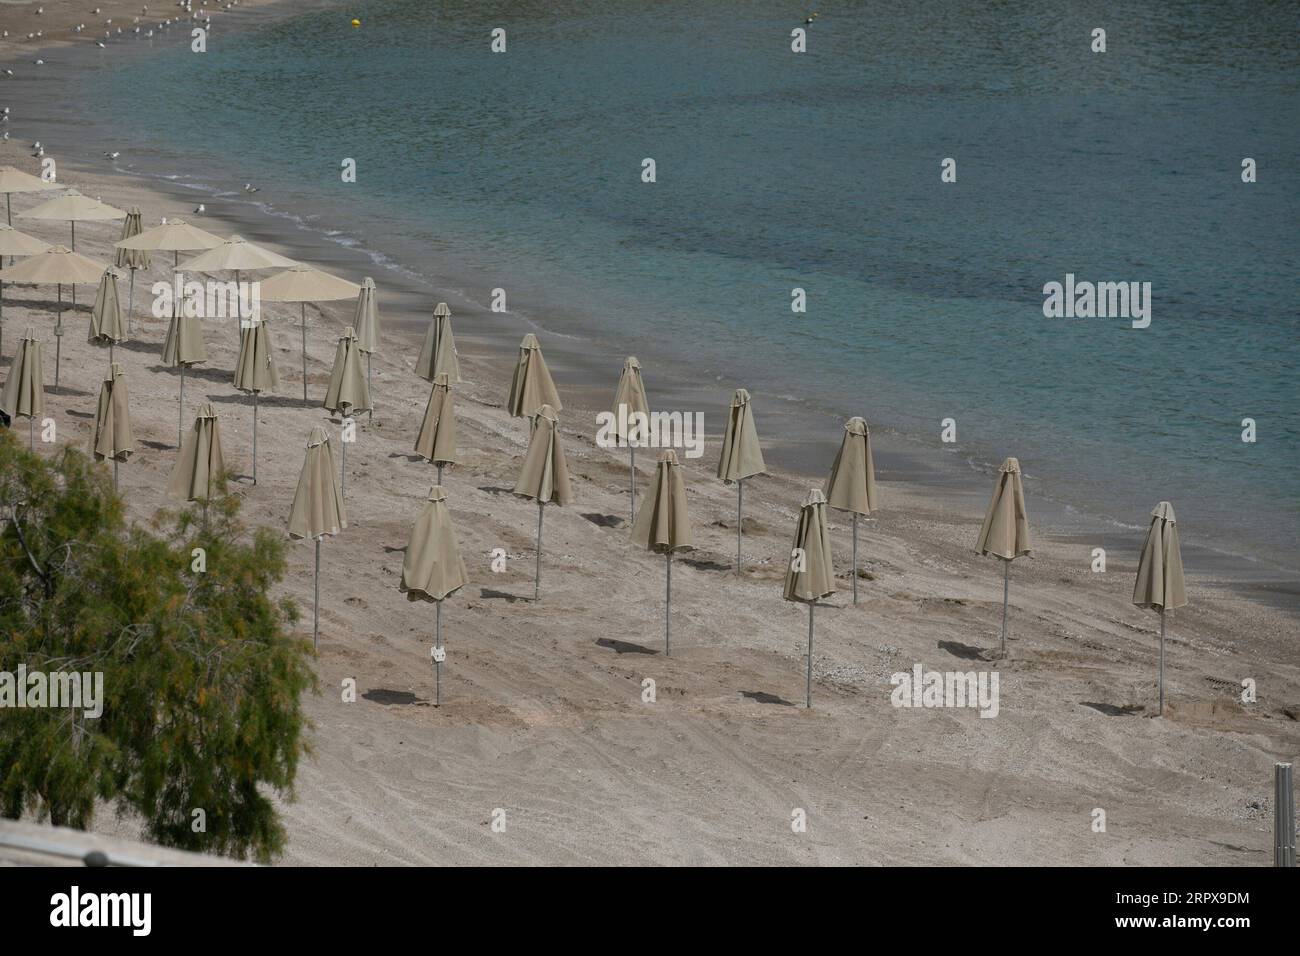 200514 -- ATENE, 14 maggio 2020 Xinhua -- foto scattata il 14 maggio 2020 mostra ombrelli installati a distanza l'uno dall'altro sulla spiaggia organizzata di Vouliagmeni, Grecia. Mercoledì i funzionari greci hanno annunciato che a partire dal 16 maggio le 515 spiagge organizzate del paese apriranno sotto restrizioni per evitare il sovraffollamento. Il Ministero della salute greco ha riferito giovedì che il numero di infezioni da COVID-19 ha raggiunto 2.770 e ci sono stati 156 decessi dall'inizio dell'epidemia nel paese il 26 febbraio. Foto di Lefteris Partsalis/Xinhua GREECE-BEACH-REOPENING PUBLICATIONxNOTxINxCHN Foto Stock